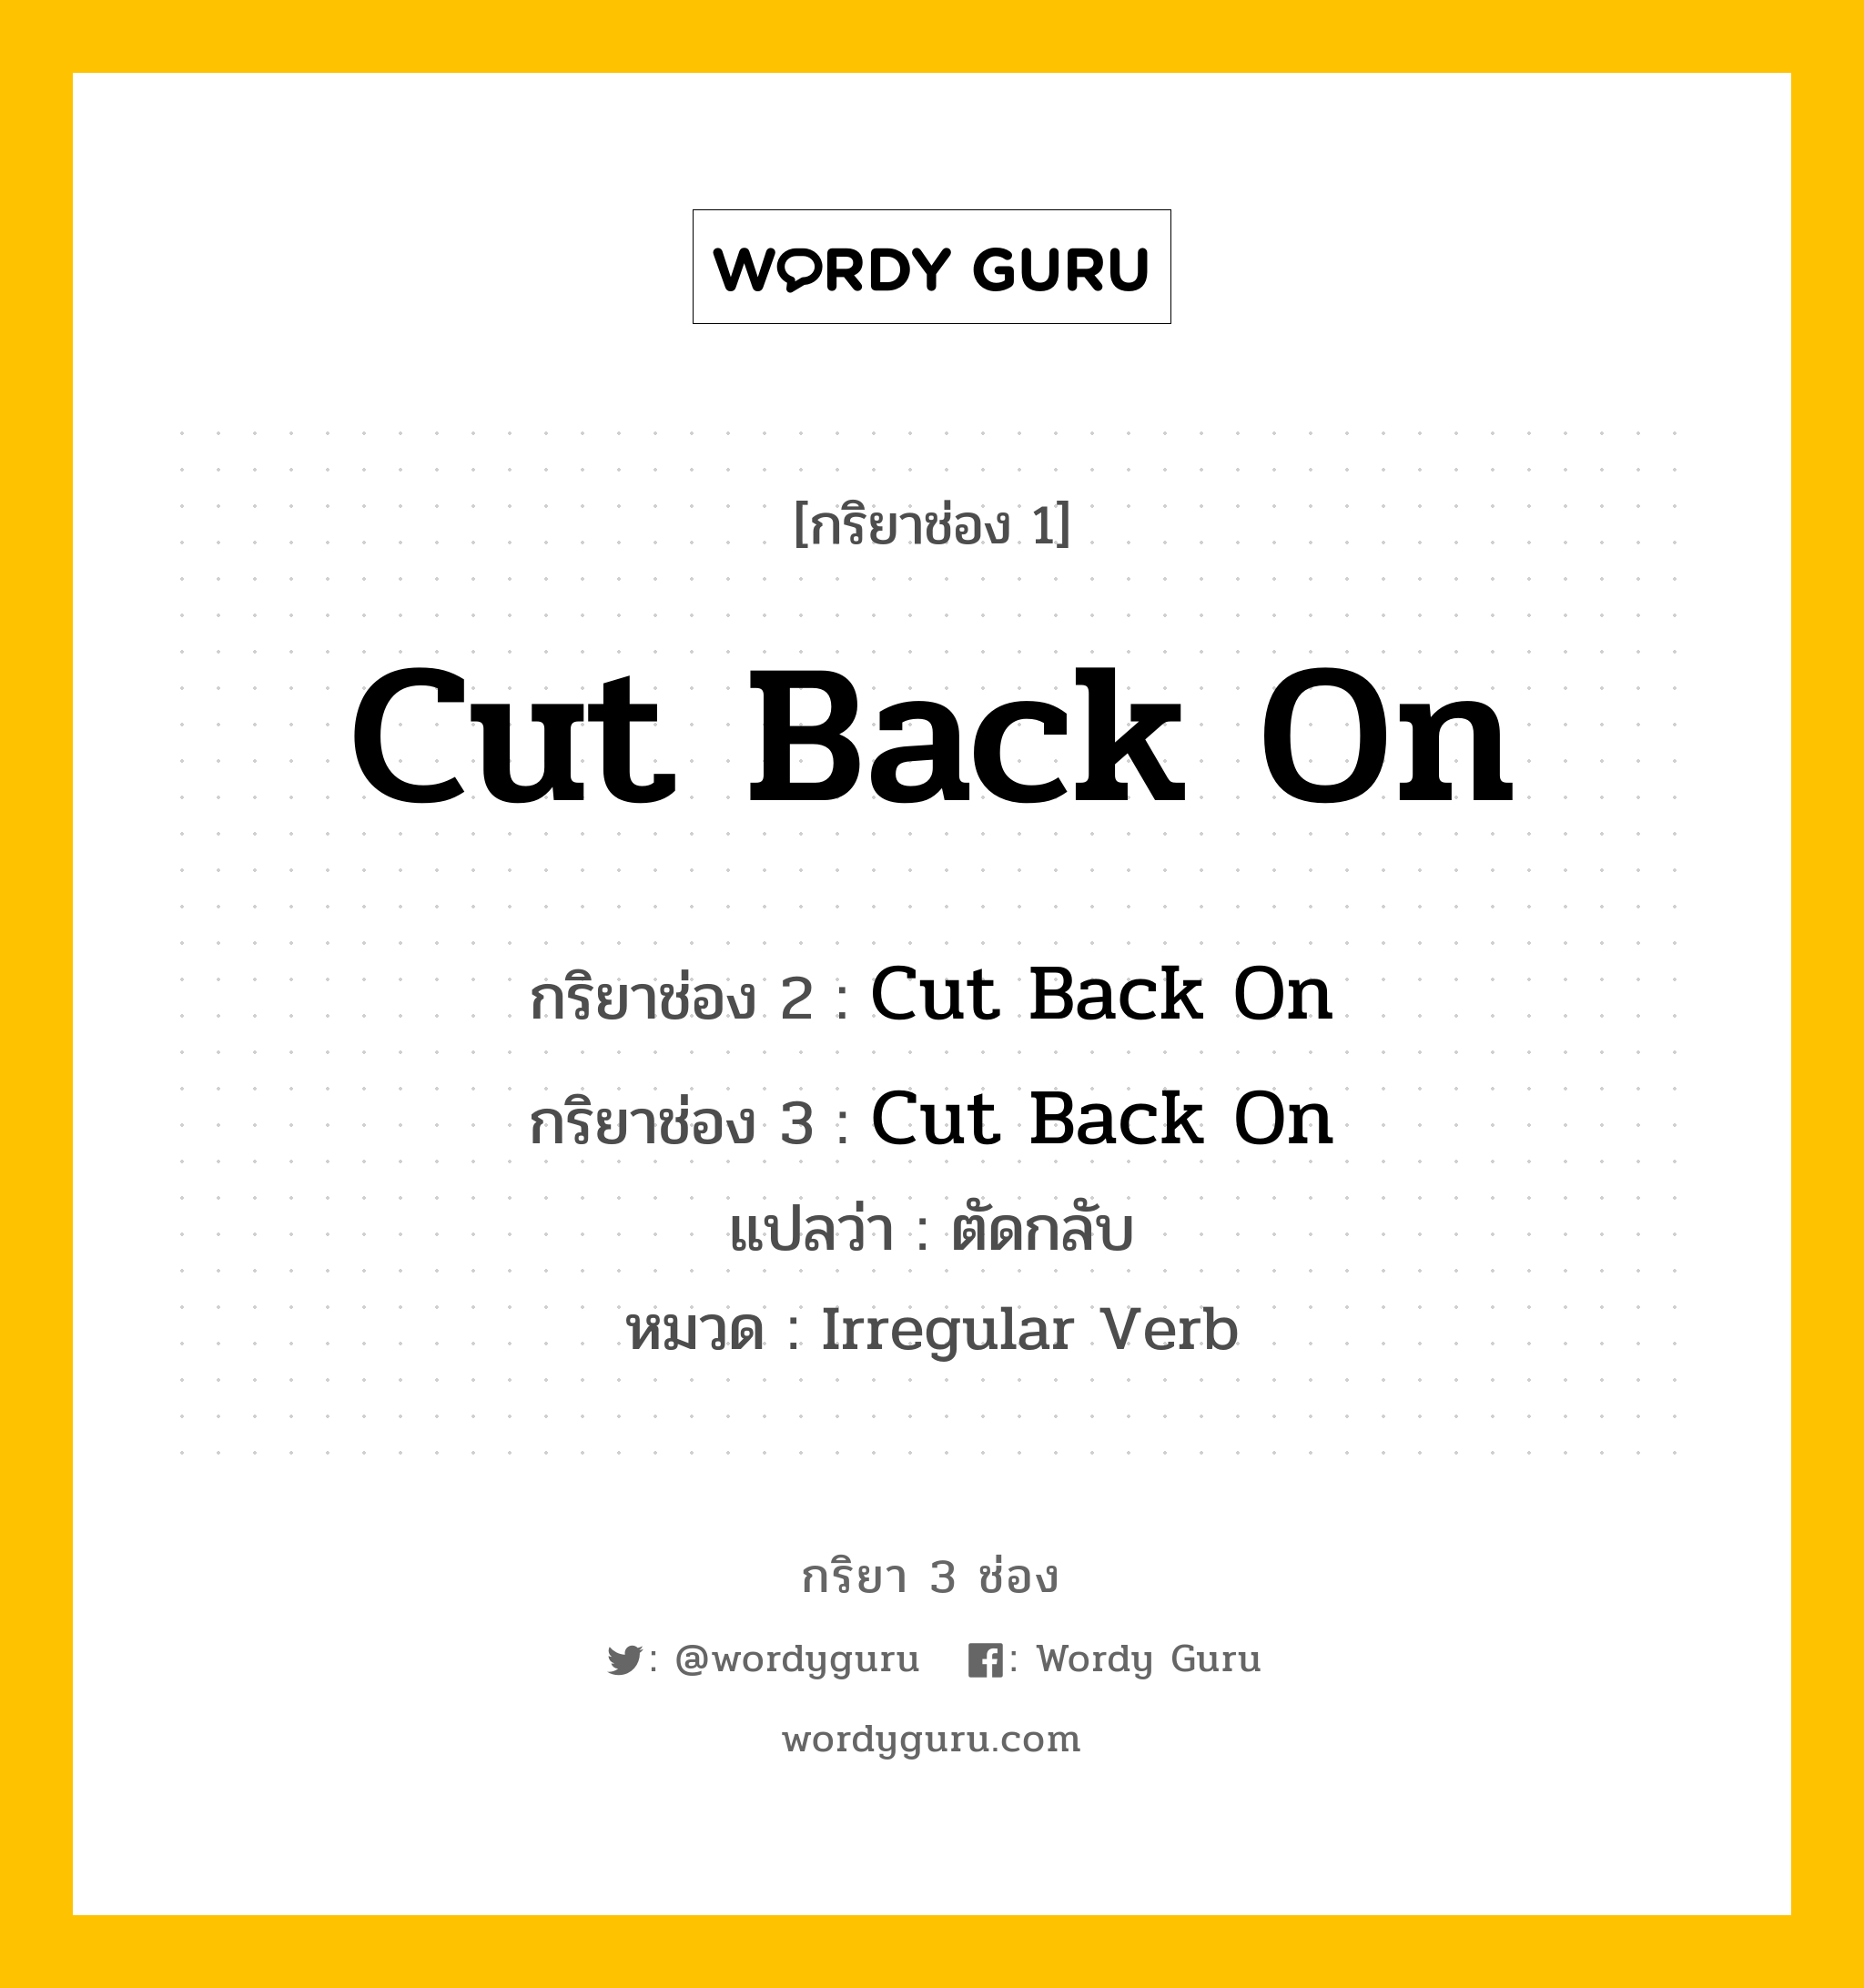 กริยา 3 ช่อง: Cut Back On ช่อง 2 Cut Back On ช่อง 3 คืออะไร, กริยาช่อง 1 Cut Back On กริยาช่อง 2 Cut Back On กริยาช่อง 3 Cut Back On แปลว่า ตัดกลับ หมวด Irregular Verb หมวด Irregular Verb